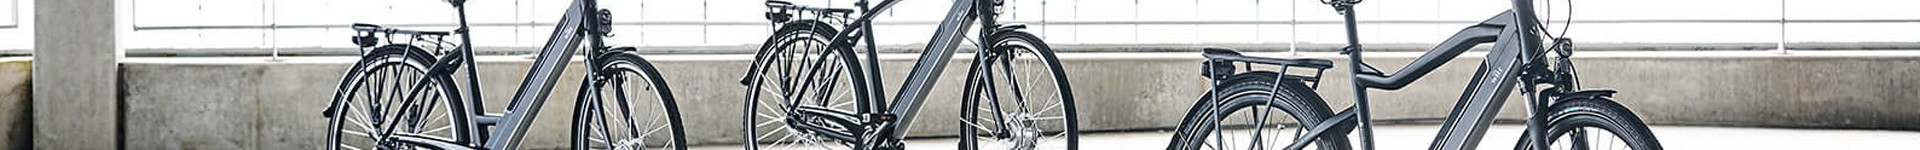 WITT - Elcykler og cykelhjelme